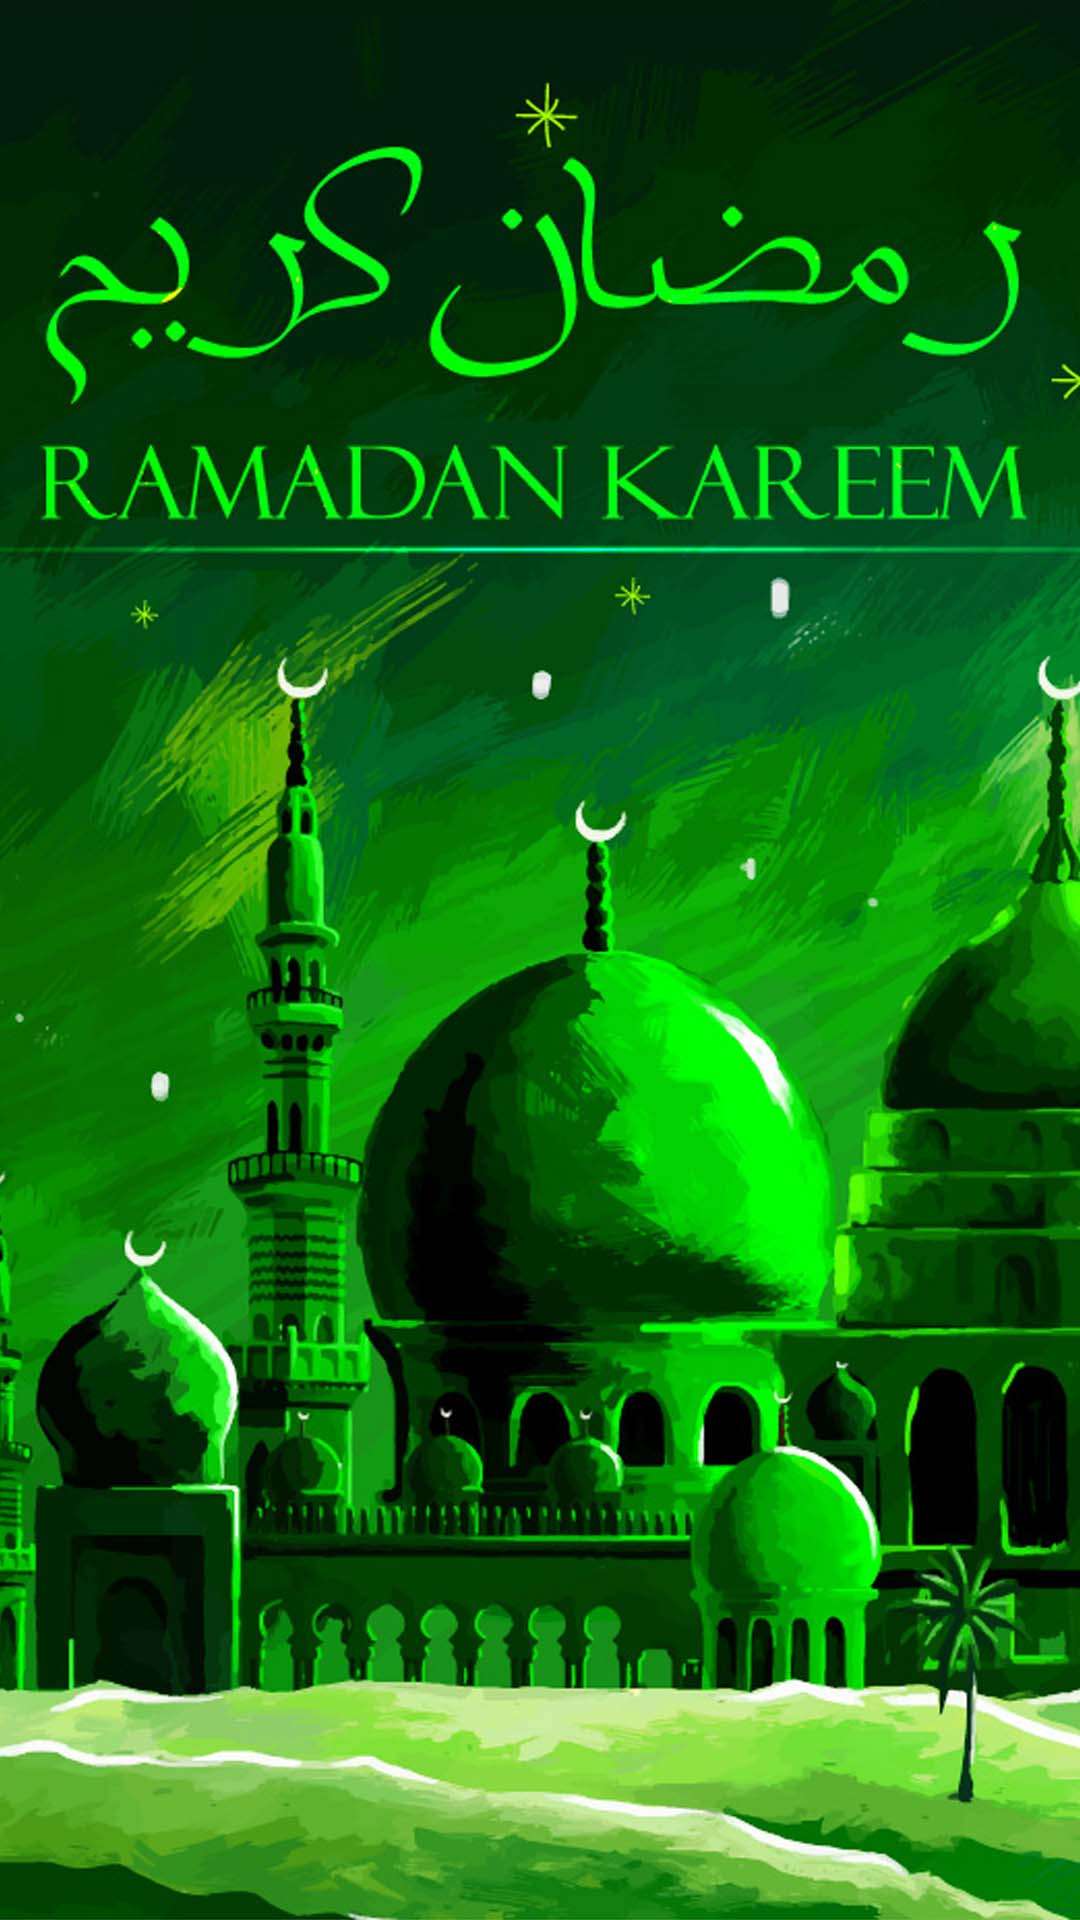 اجمل خلفيات الموبايل بمناسبه شهر رمضان 2020 HD-14